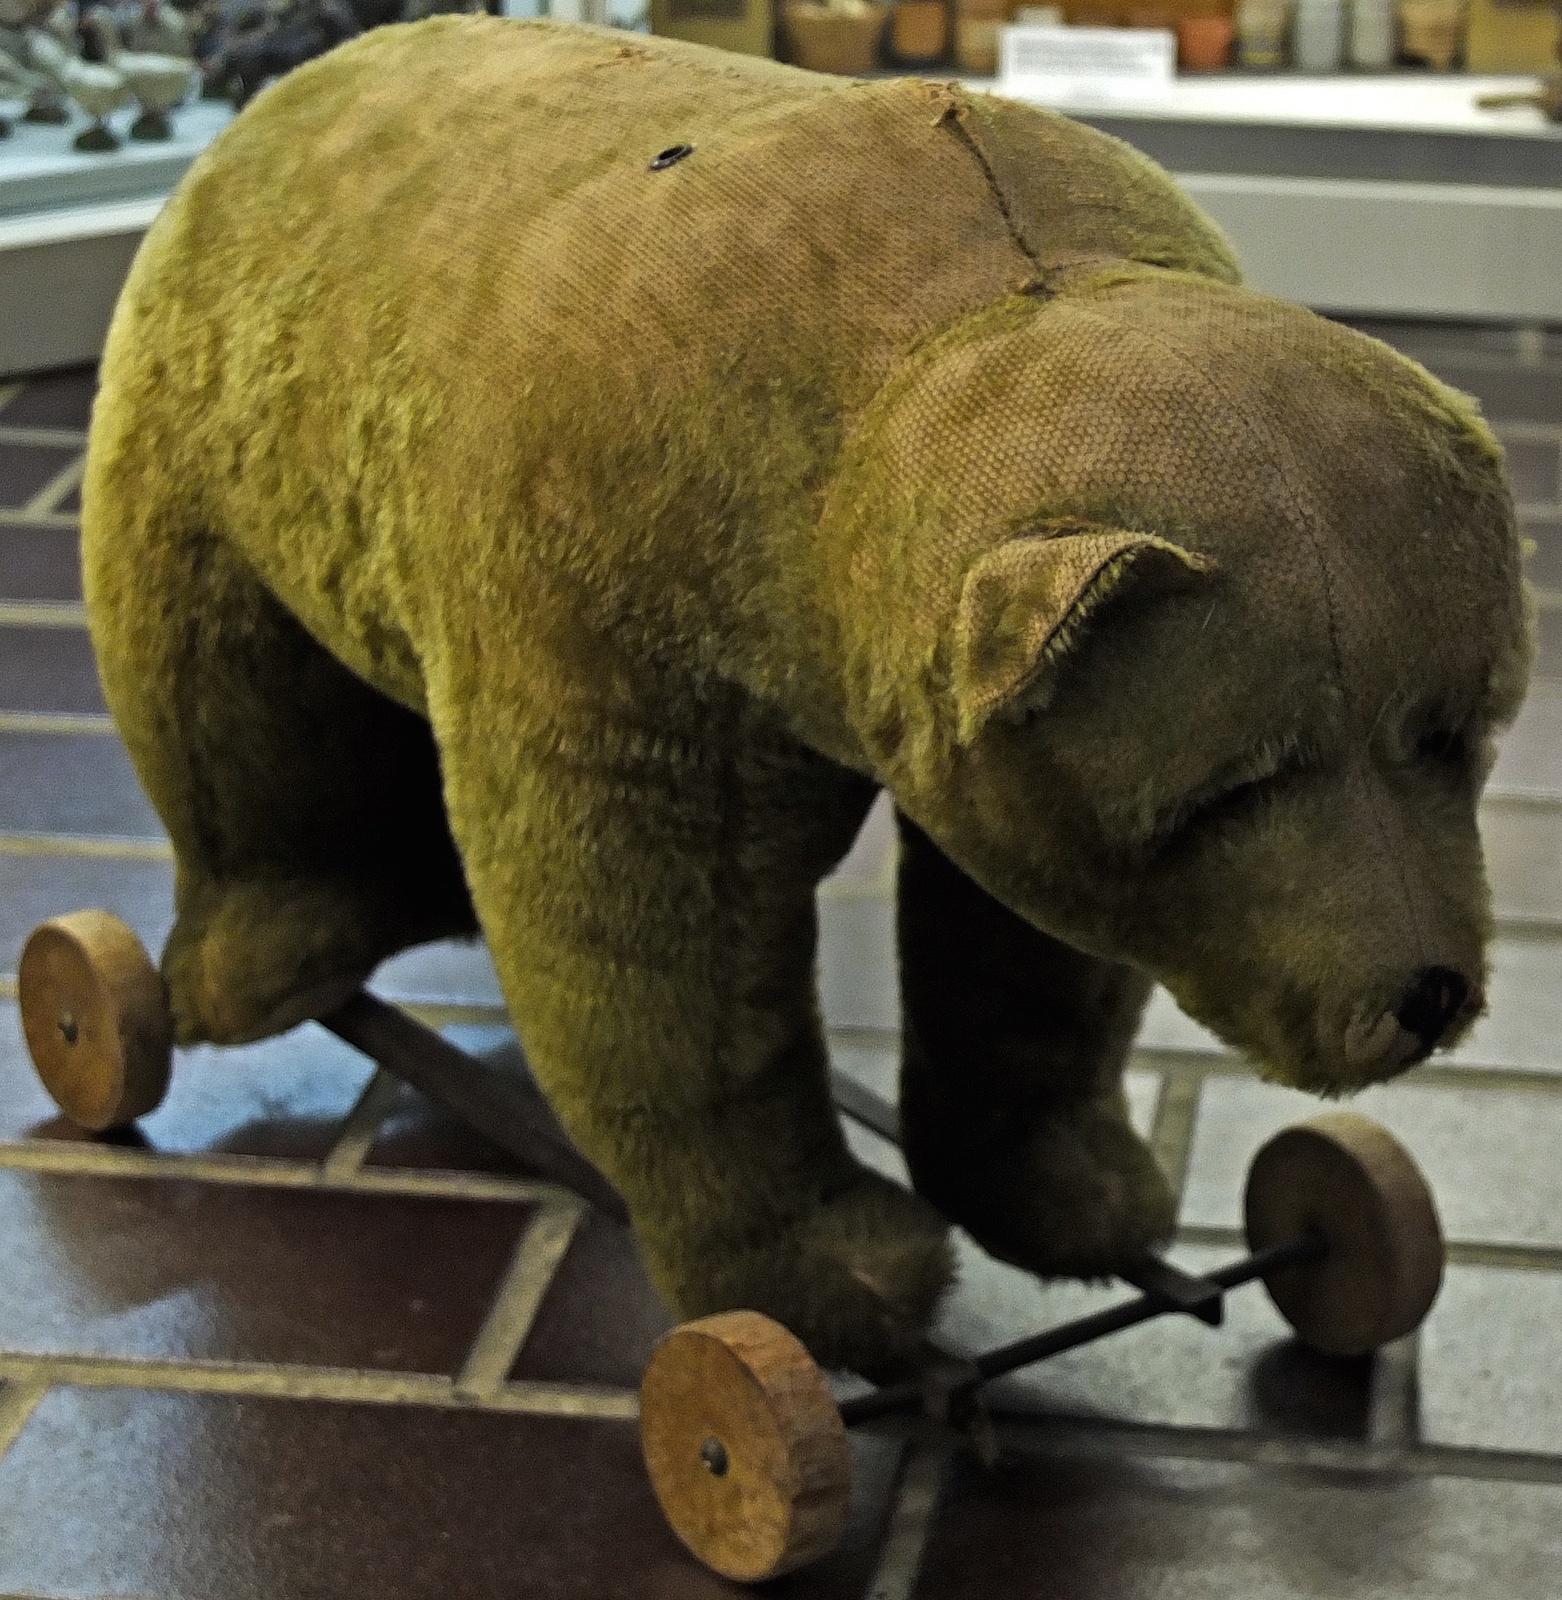 Steiff Bär auf Rollen (Das Kleine Museum - Spielzeug aus zwei Jahrhunderten CC BY)